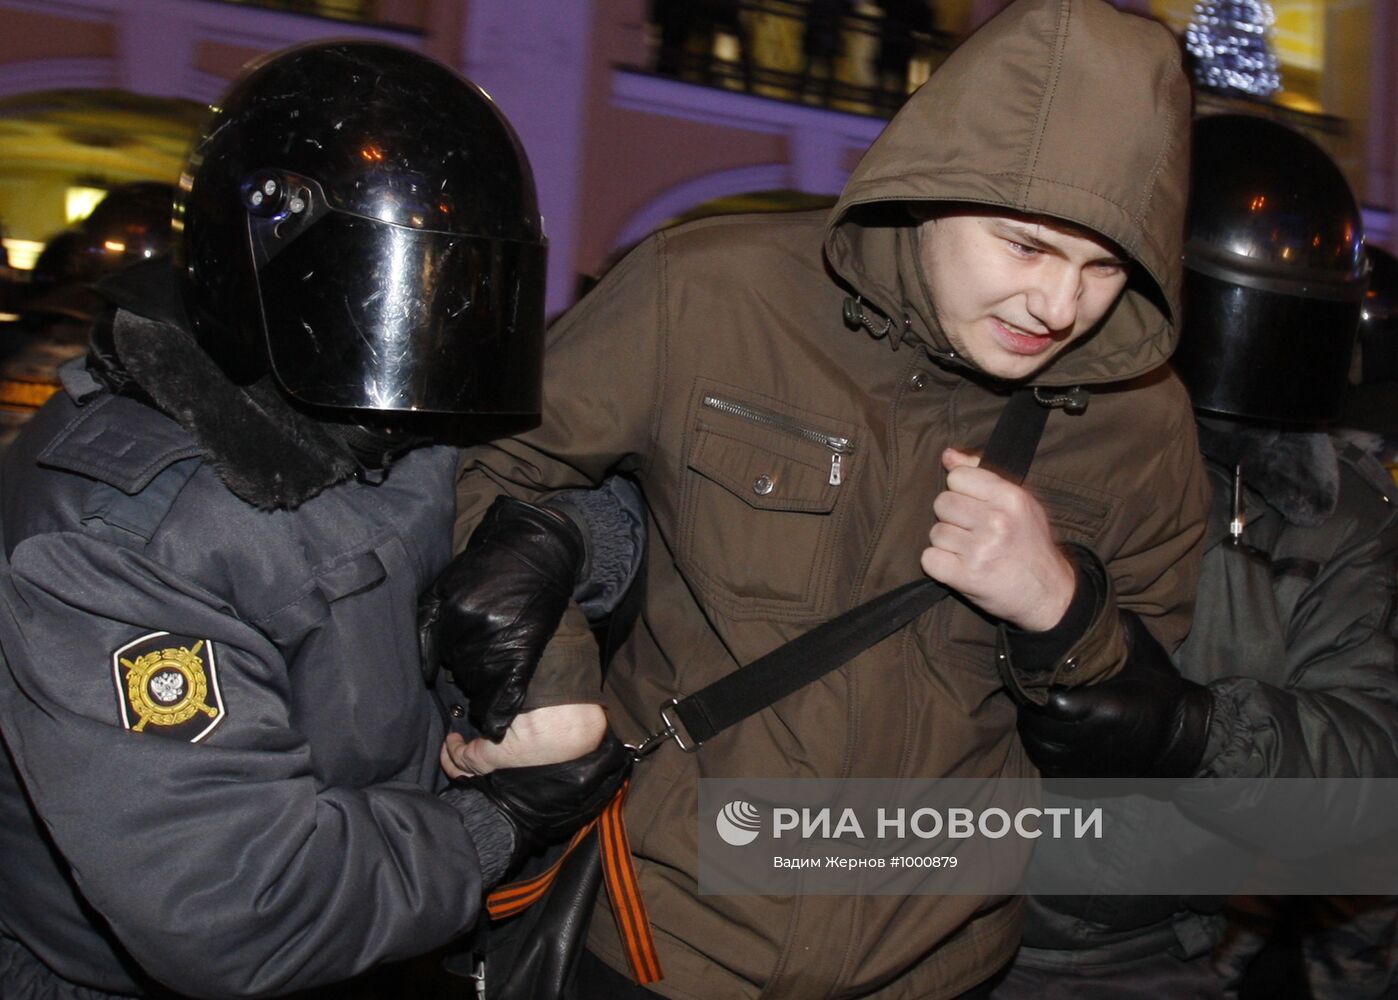 Акция протеста у станции метро "Гостиный Двор" в Петербурге